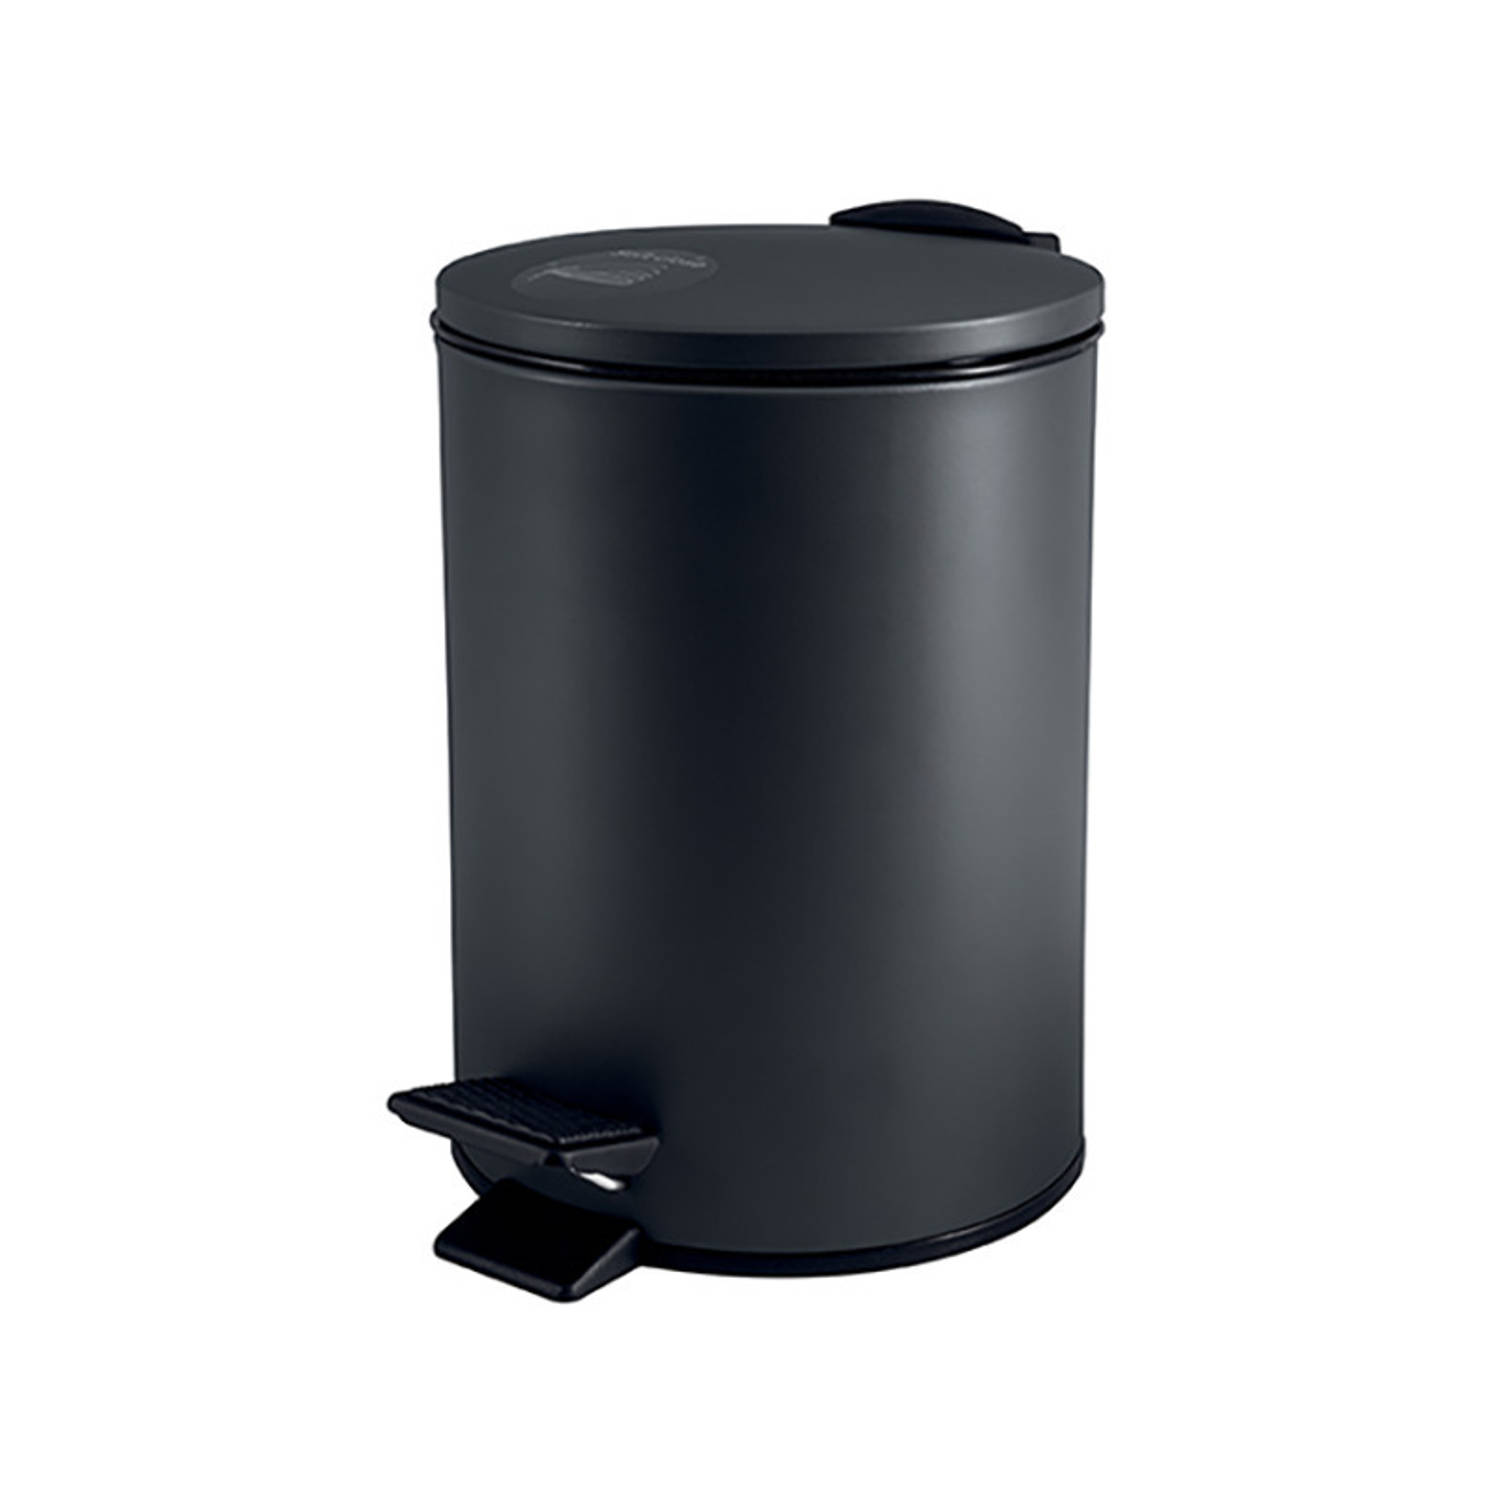 Spirella Pedaalemmer Cannes - zwart - 3 liter - metaal - L17 x H25 cm - soft-close - toilet/badkamer